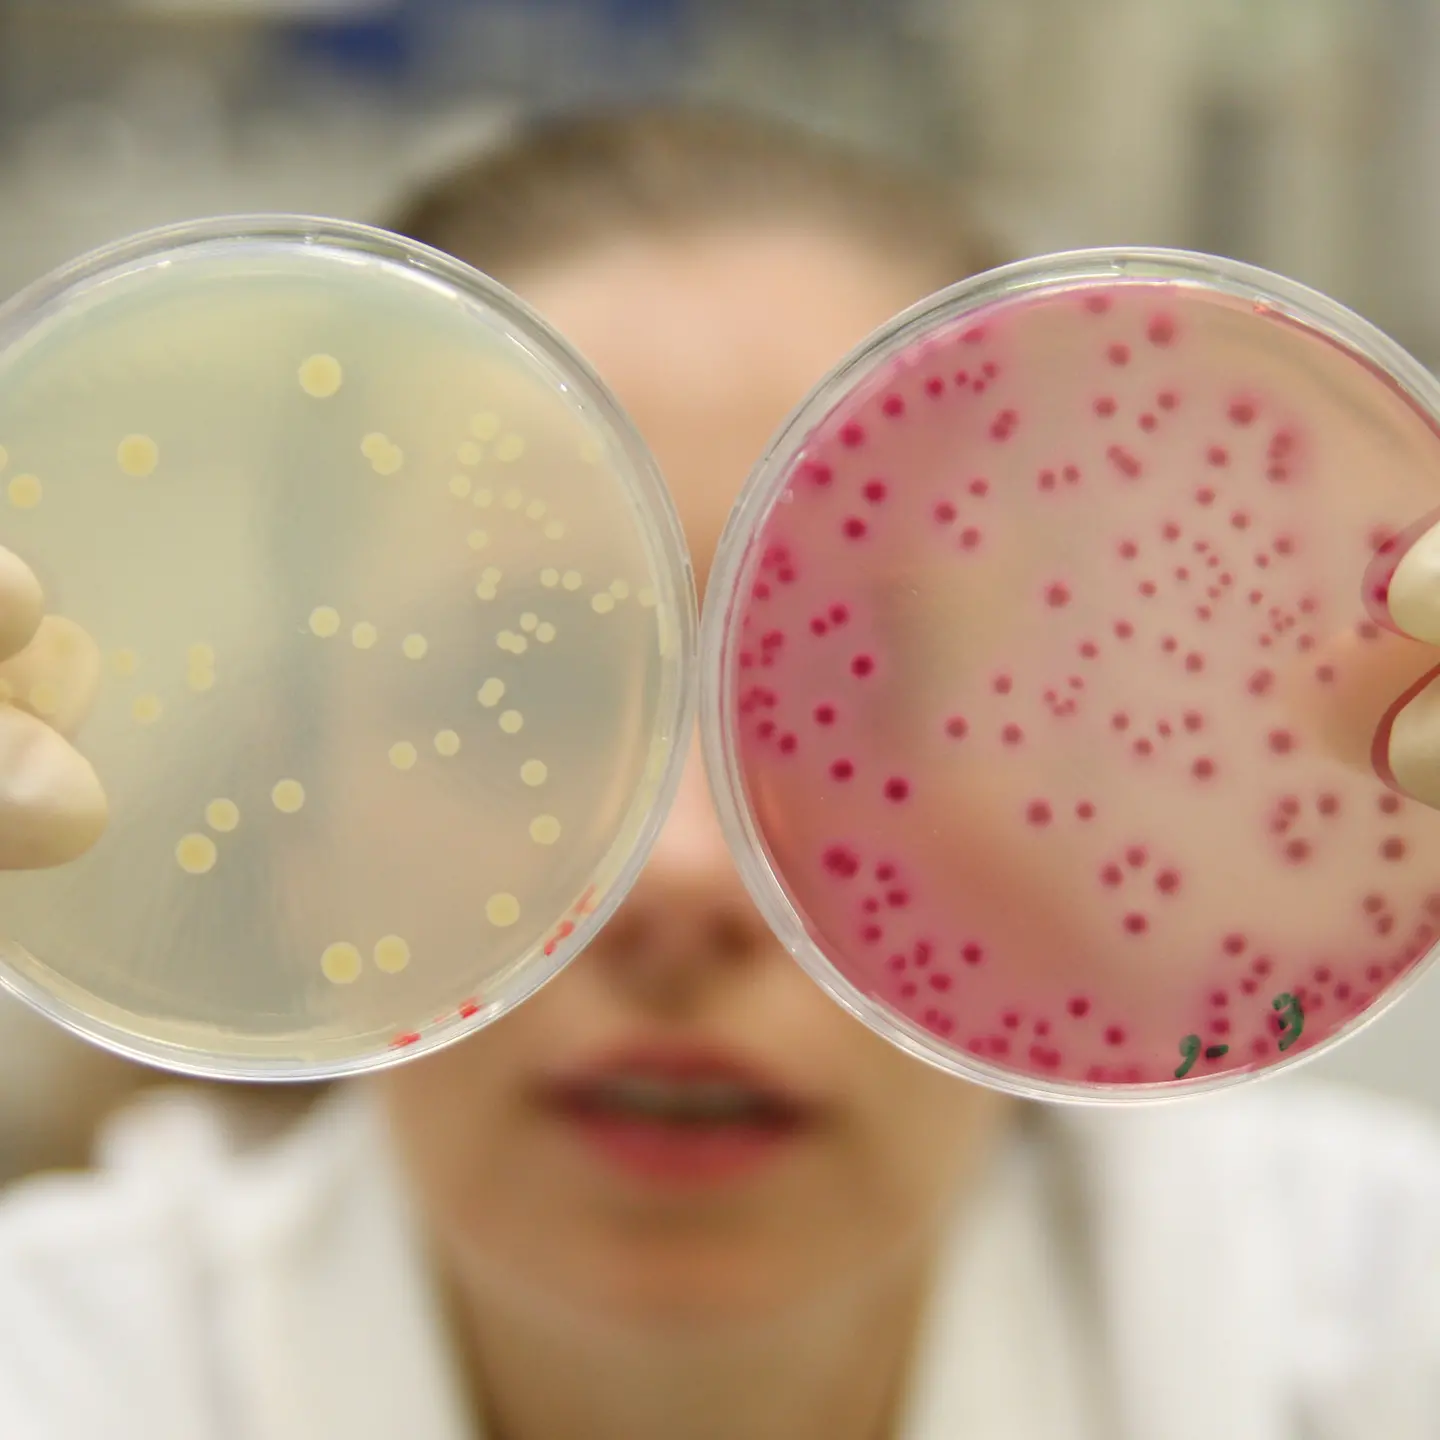 Eine weibliche Person im weißen Kittel schaut in zwei Petrischalen mit unterschiedlich gefärbten Inhalt.